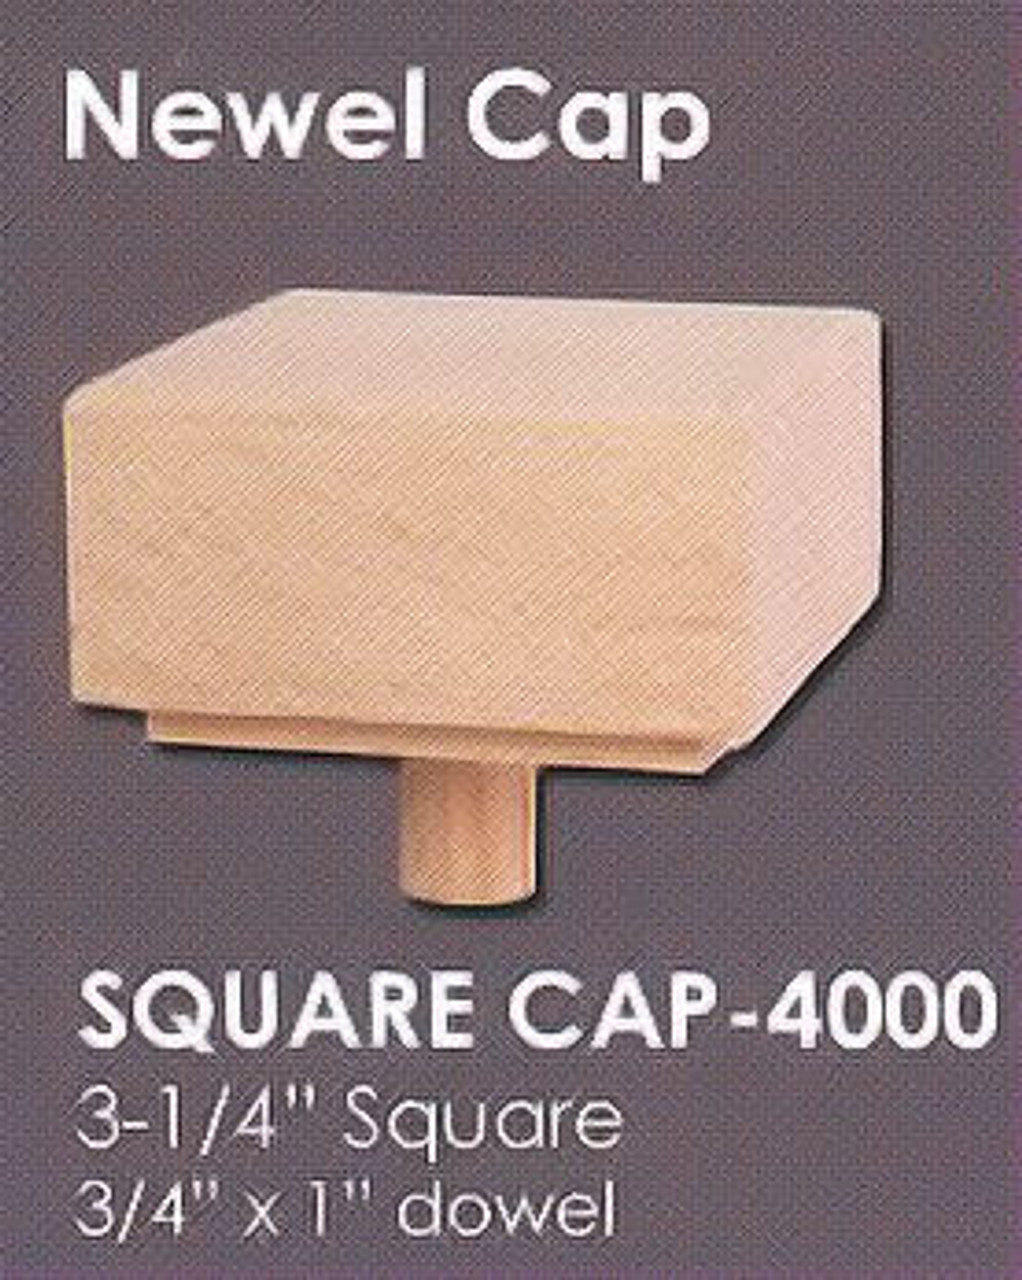 Square Cap - 4000, Red Oak